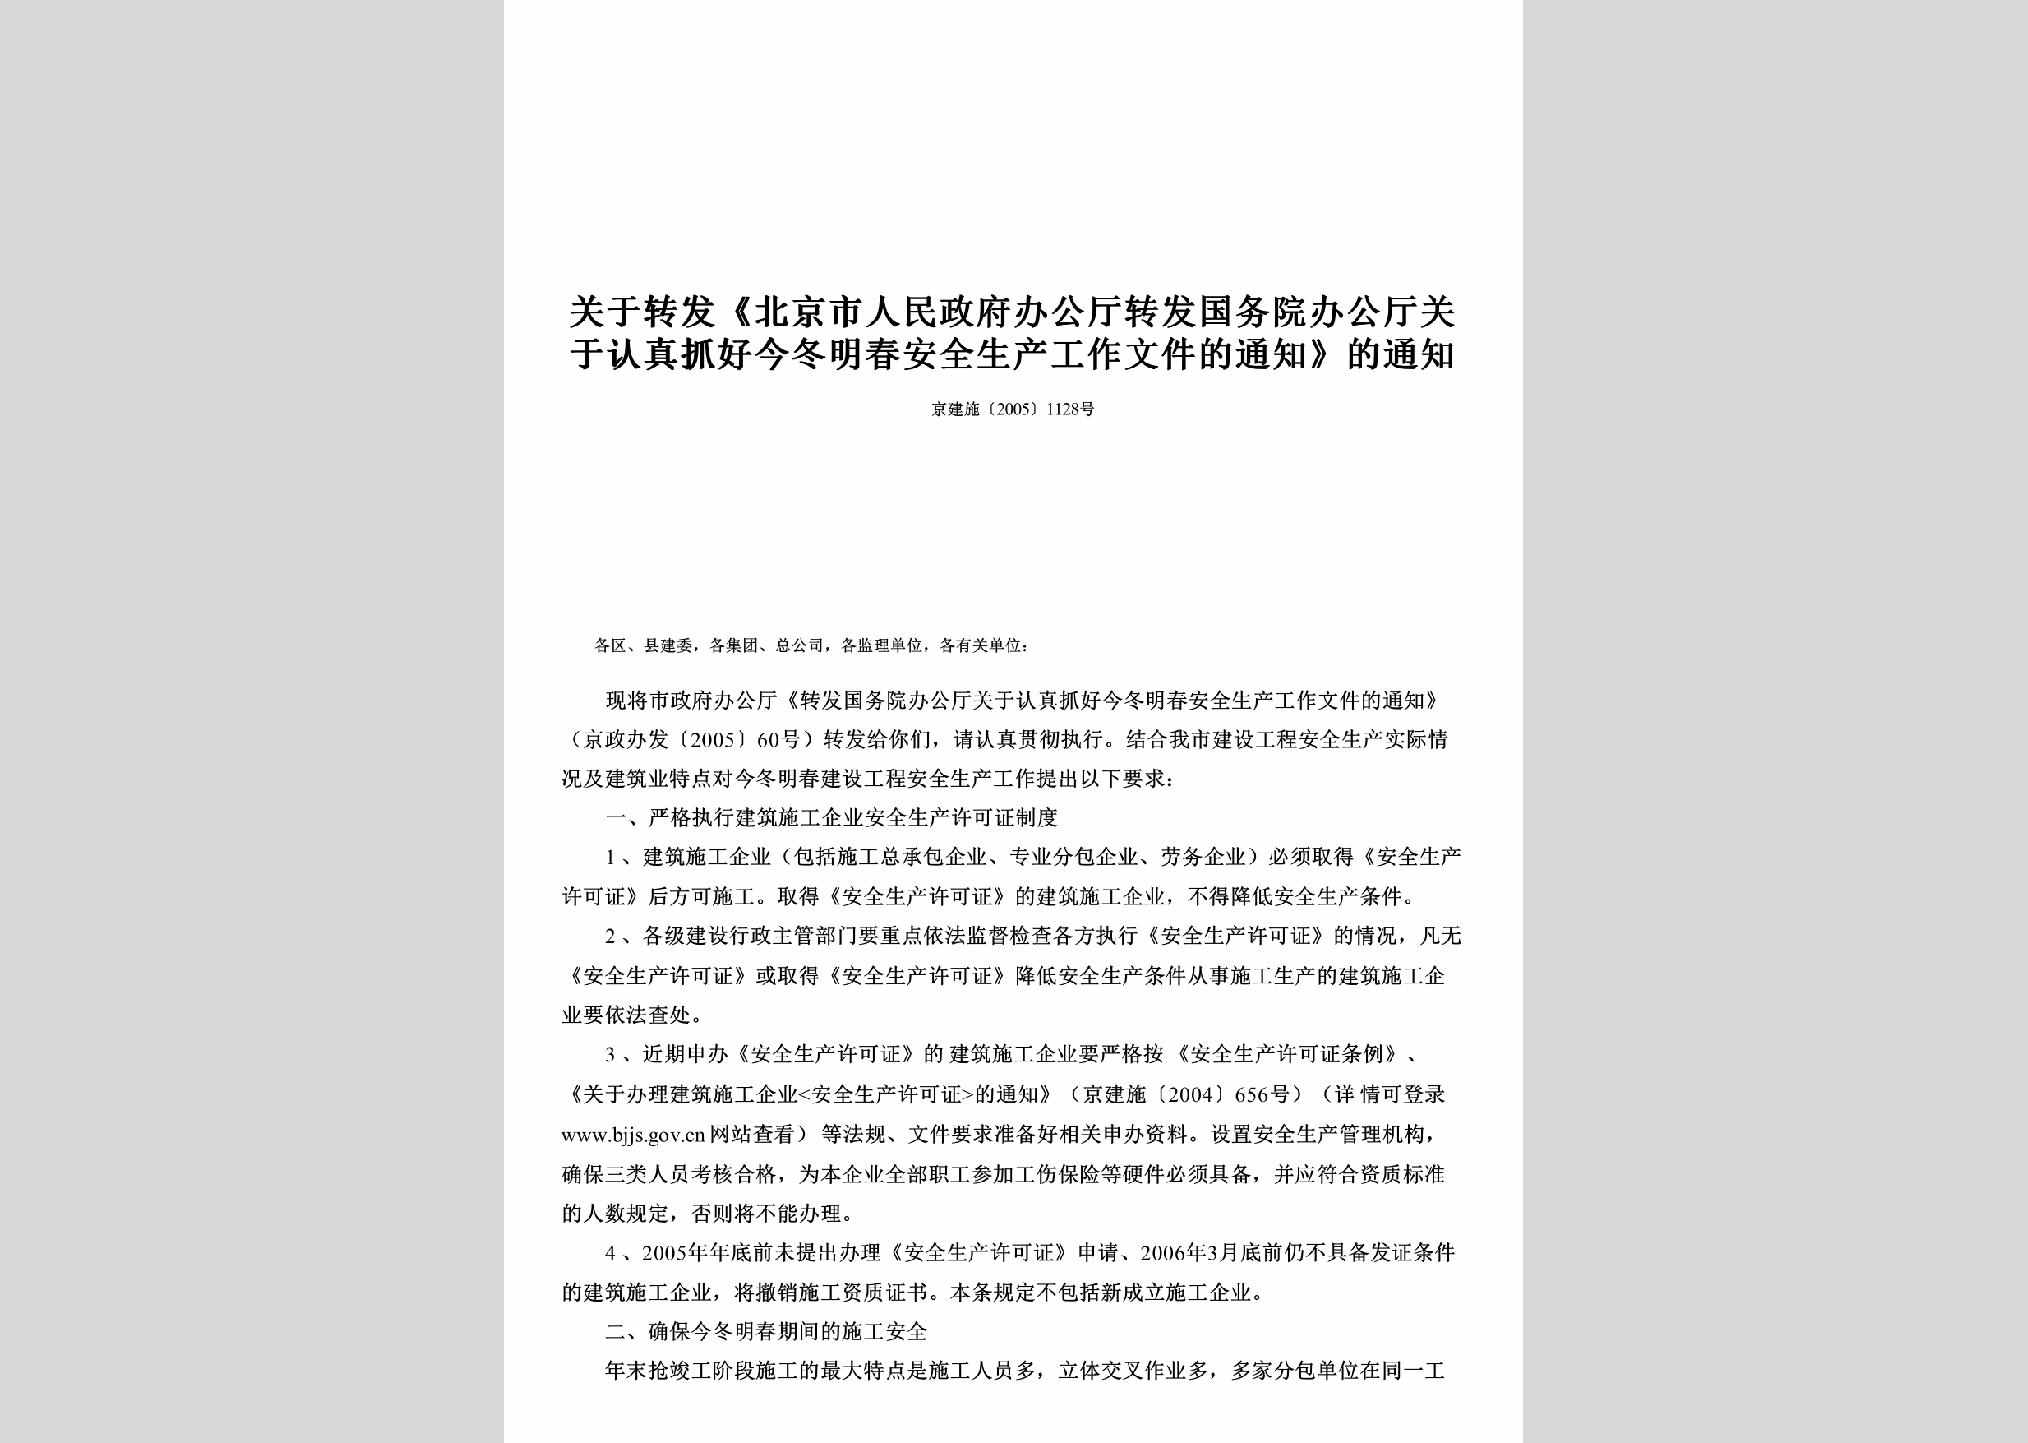 京建施[2005]1128号：关于转发《北京市人民政府办公厅转发国务院办公厅关于认真抓好今冬明春安全生产工作文件的通知》的通知